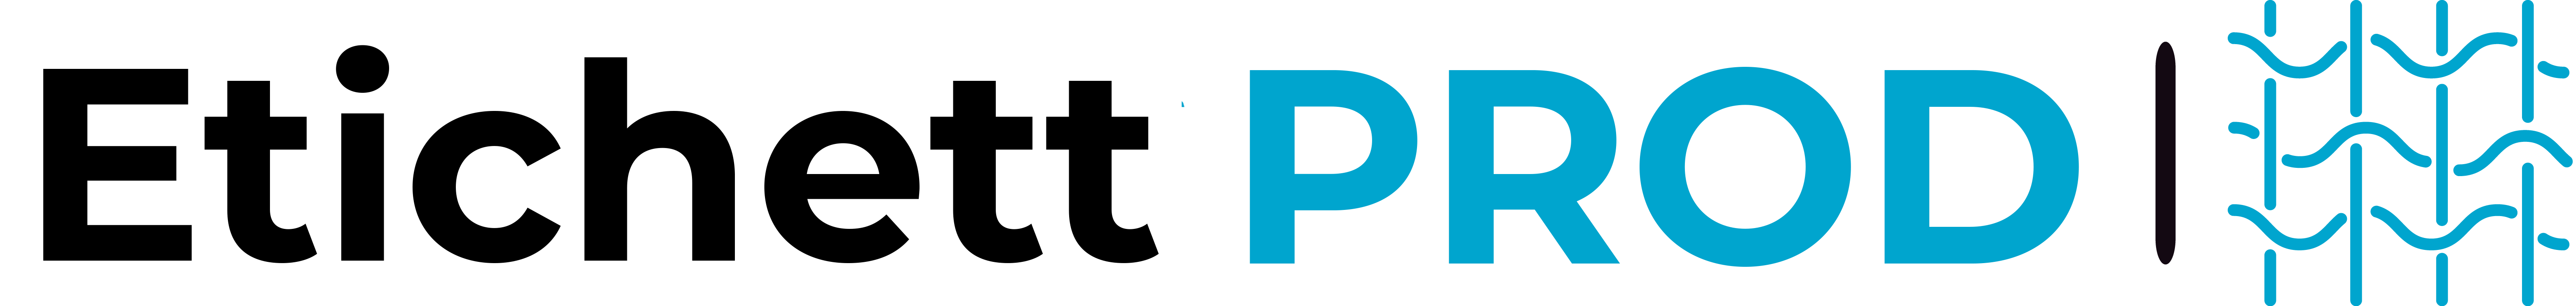 ETICHETT-PROD-logo